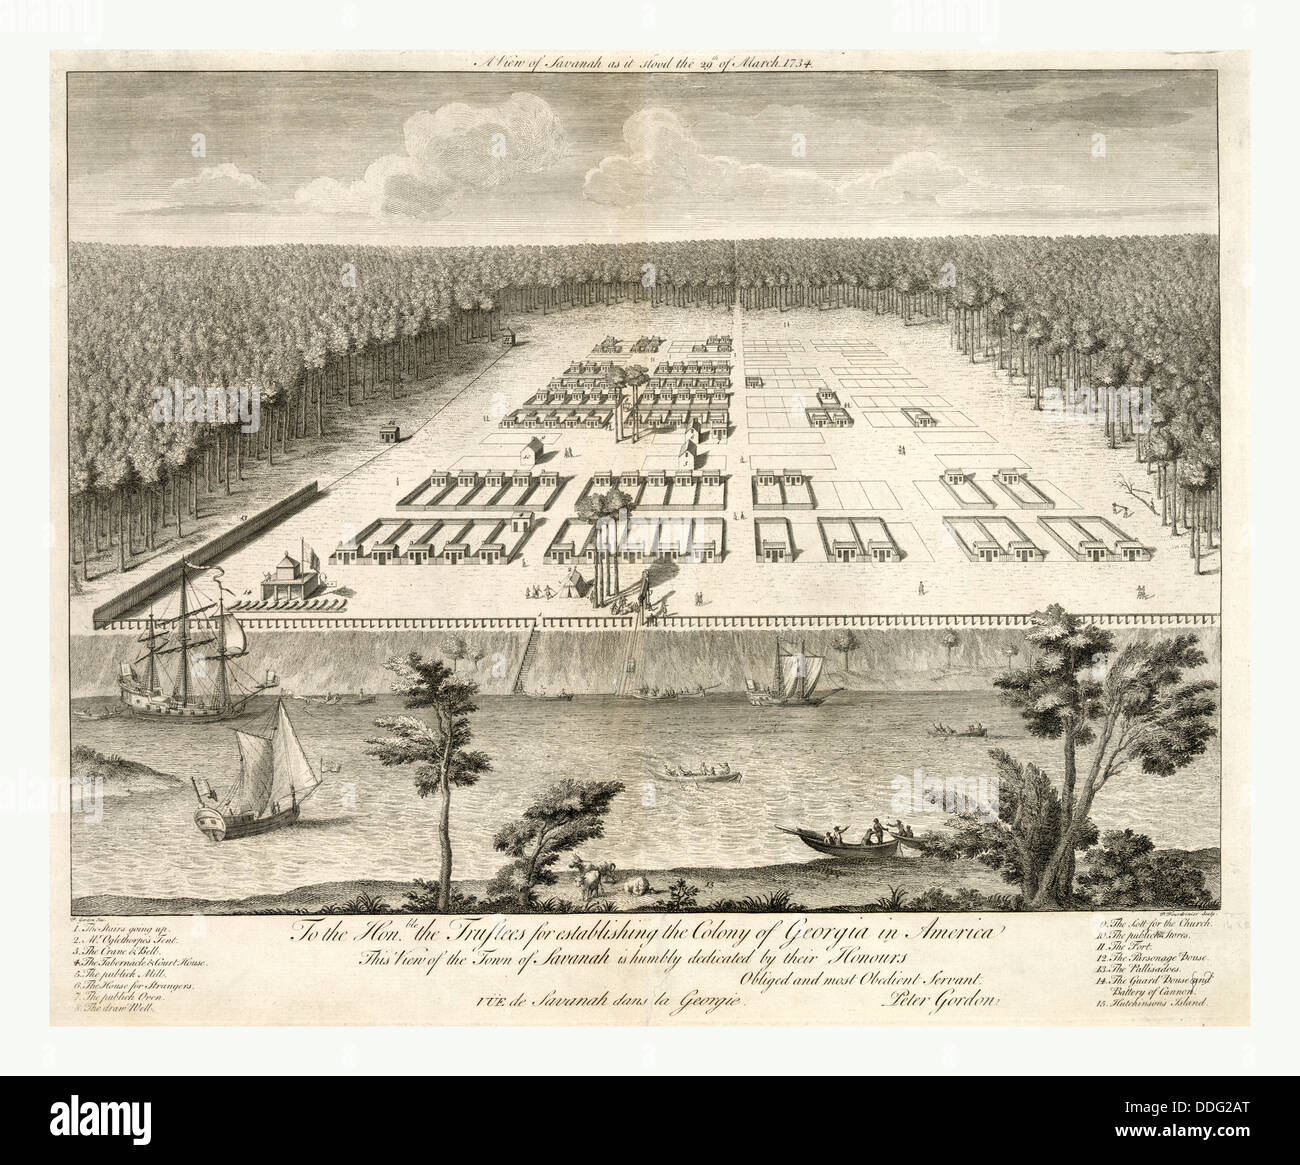 Eine Ansicht von Savannah, Georgia, als er Stand 29. März 1734. Lithographie von Kupferstich von s. Fourdrinier nach p. Gordon, USA Stockfoto